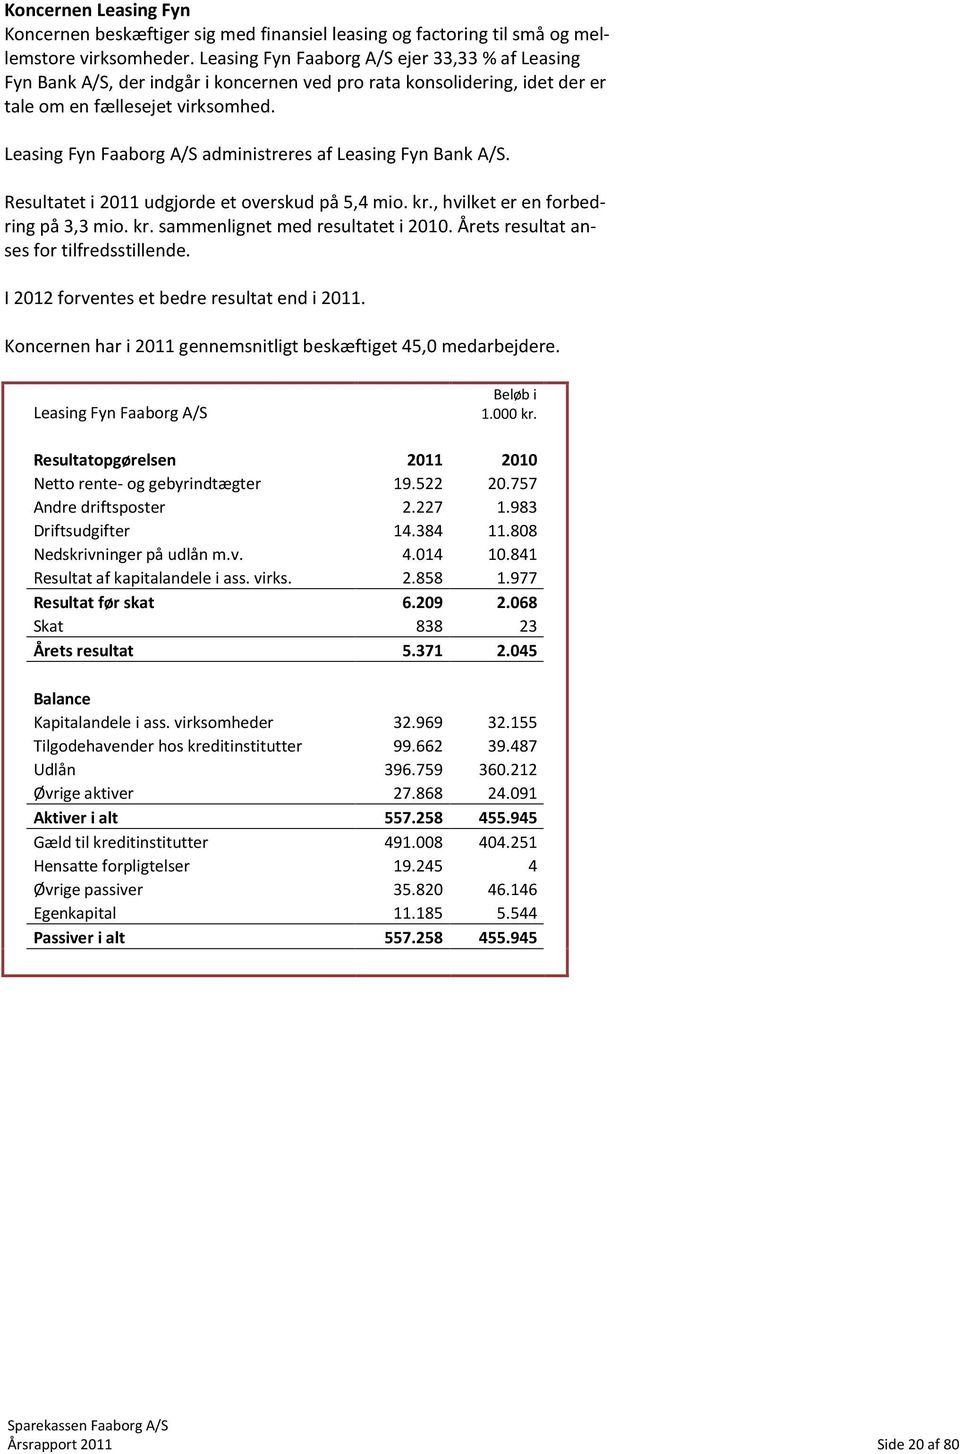 Leasing Fyn Faaborg A/S administreres af Leasing Fyn Bank A/S. Resultatet i 2011 udgjorde et overskud på 5,4 mio. kr., hvilket er en forbedring på 3,3 mio. kr. sammenlignet med resultatet i 2010.